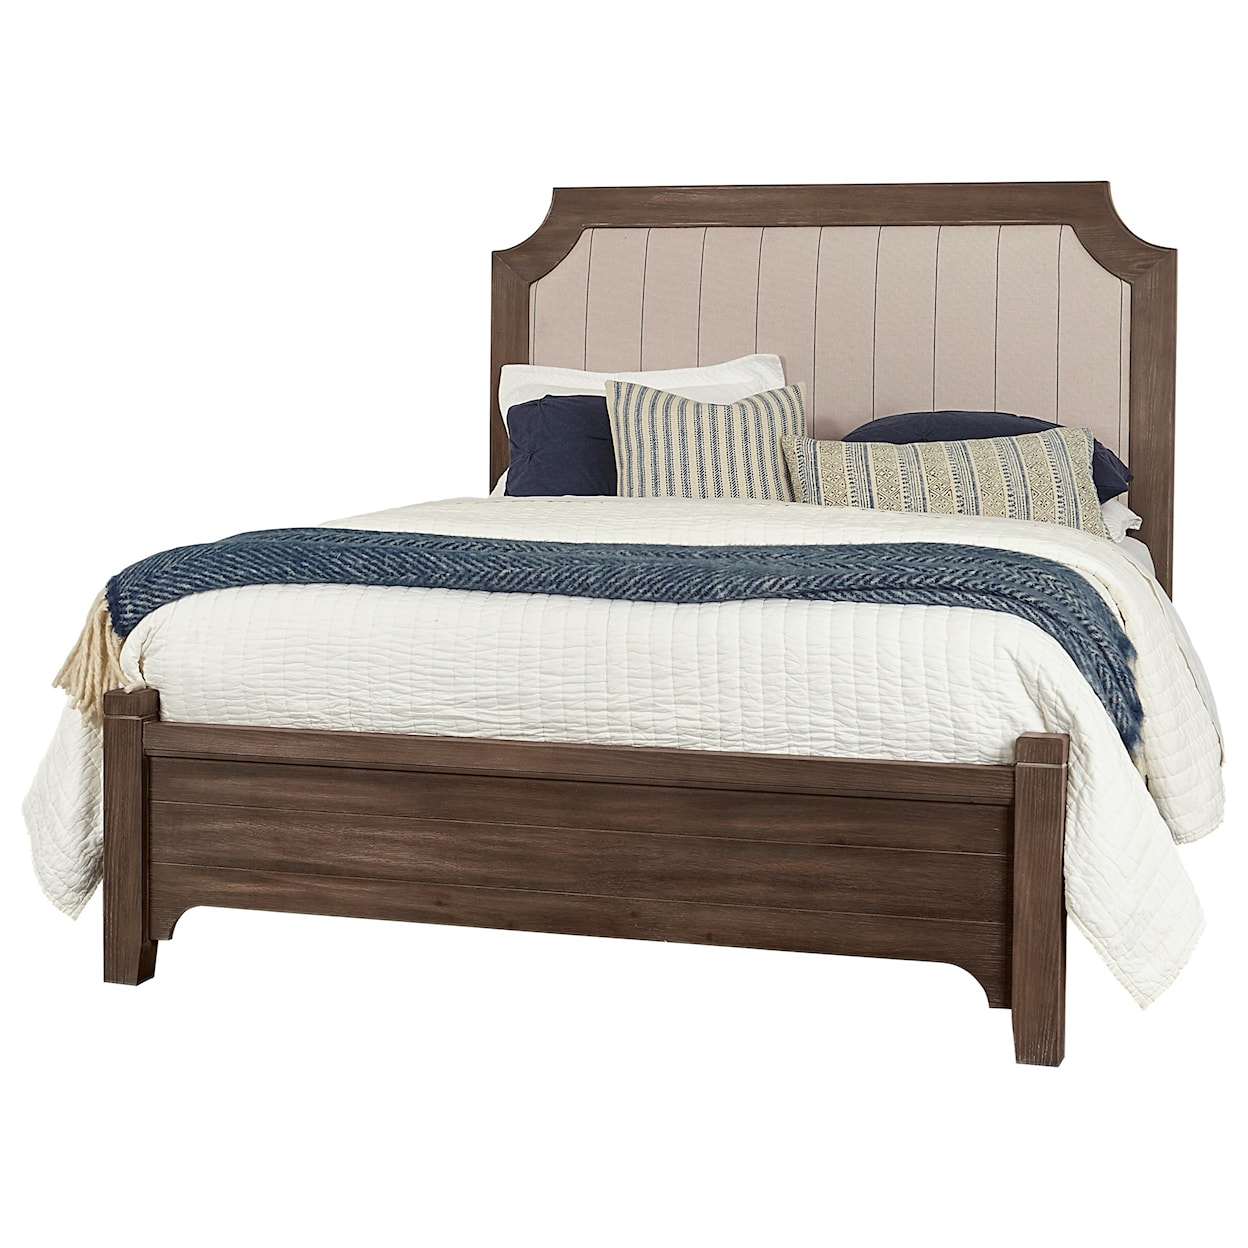 Vaughan-Bassett Bungalow Queen Upholstered Bed